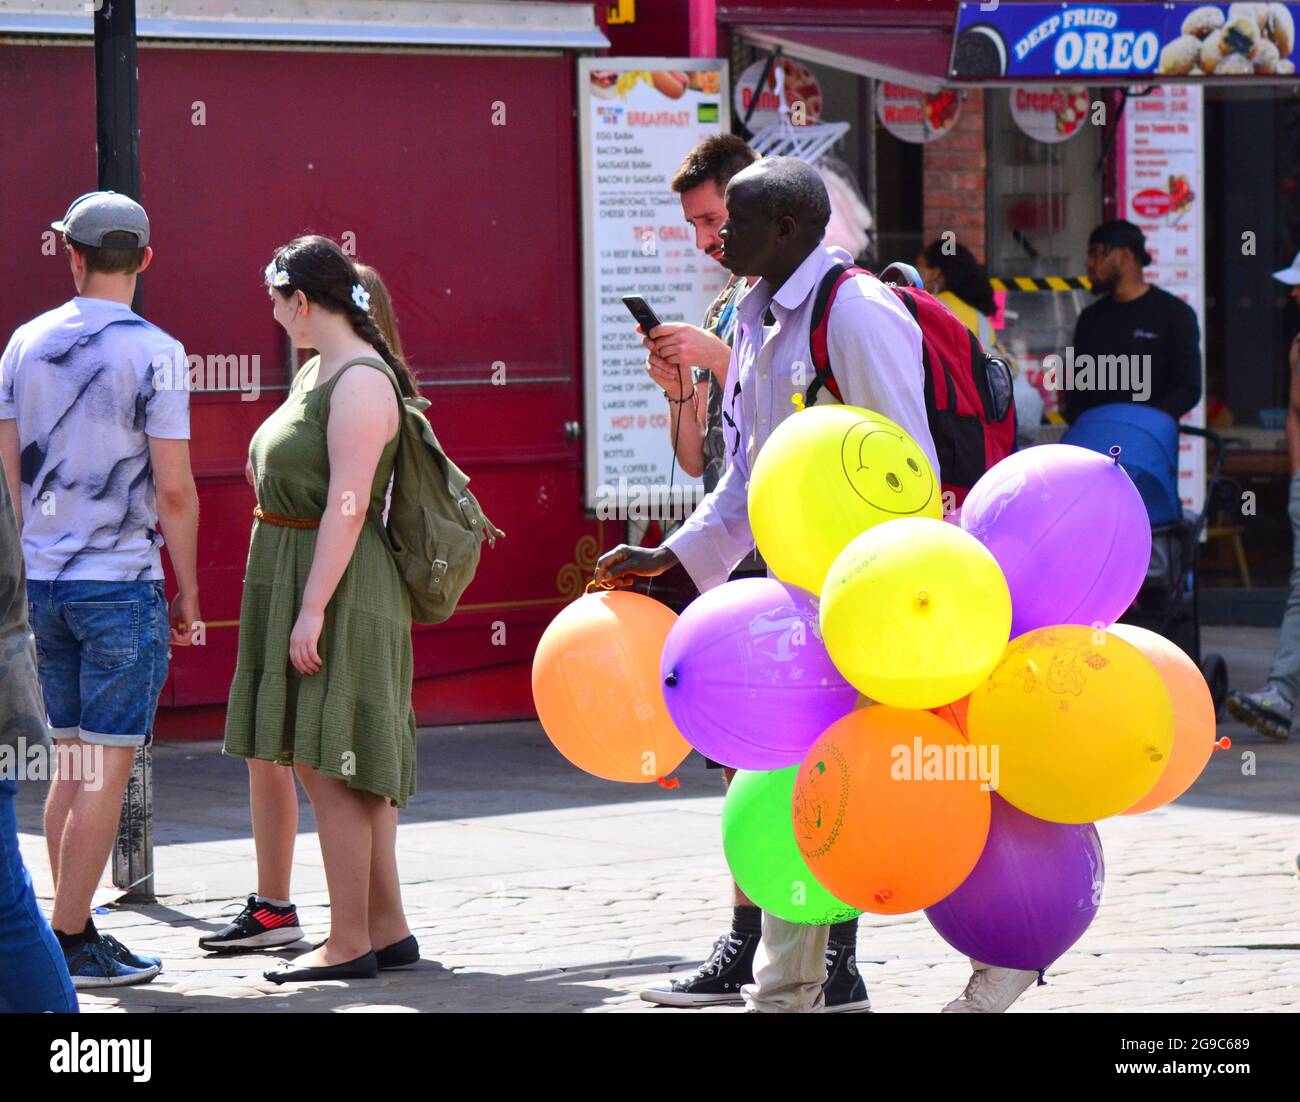 Un uomo che vende palloncini cerca clienti nel centro di Manchester, Inghilterra, Regno Unito. Foto Stock